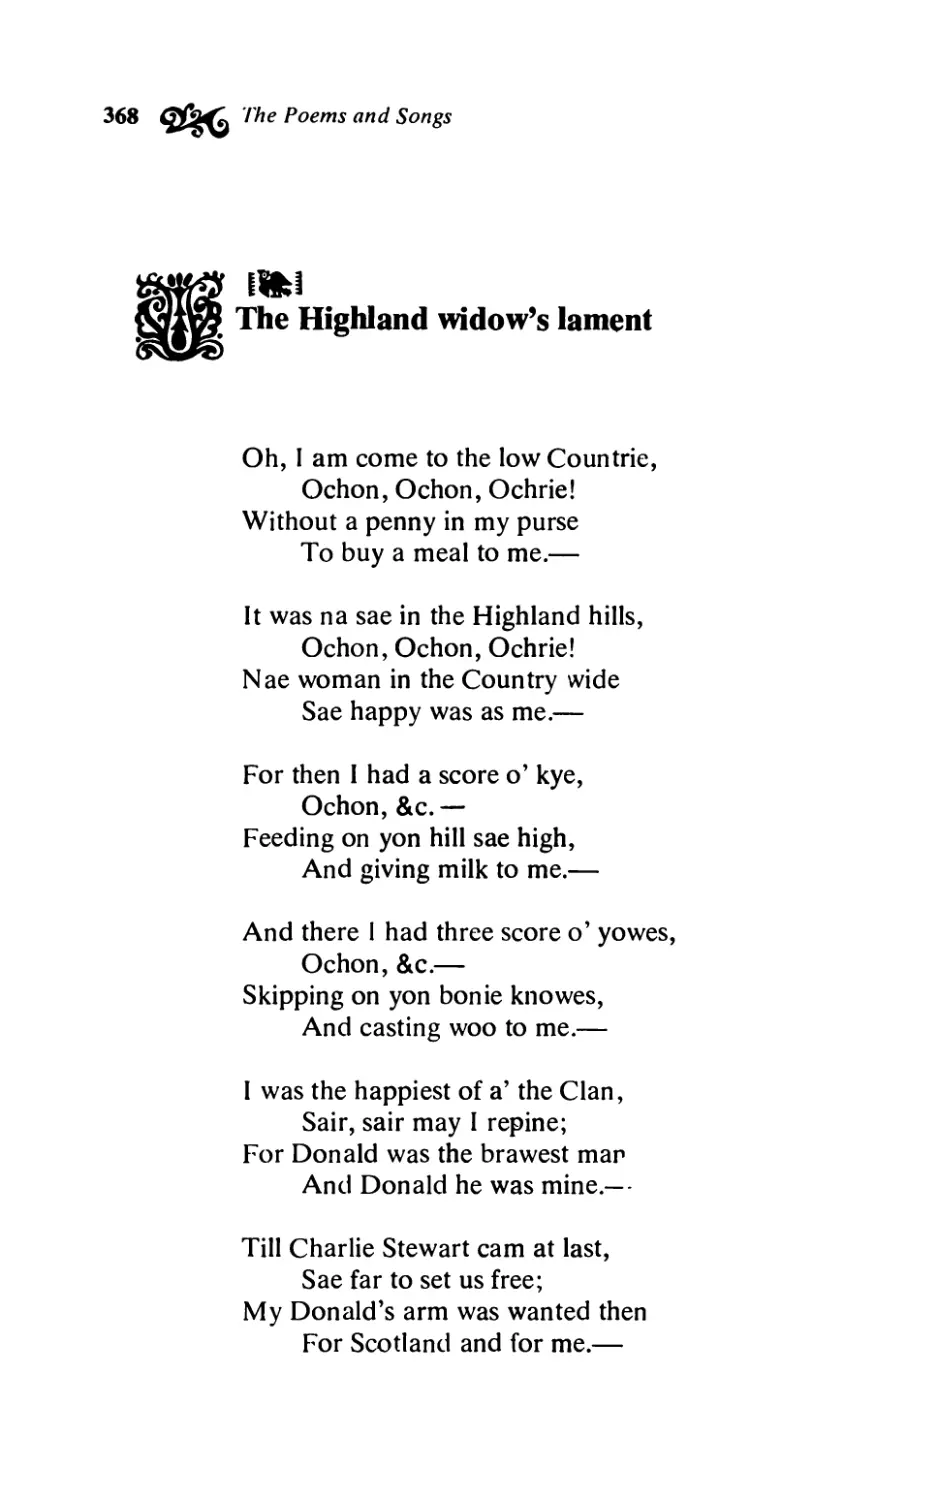 The Highland widow’s lament